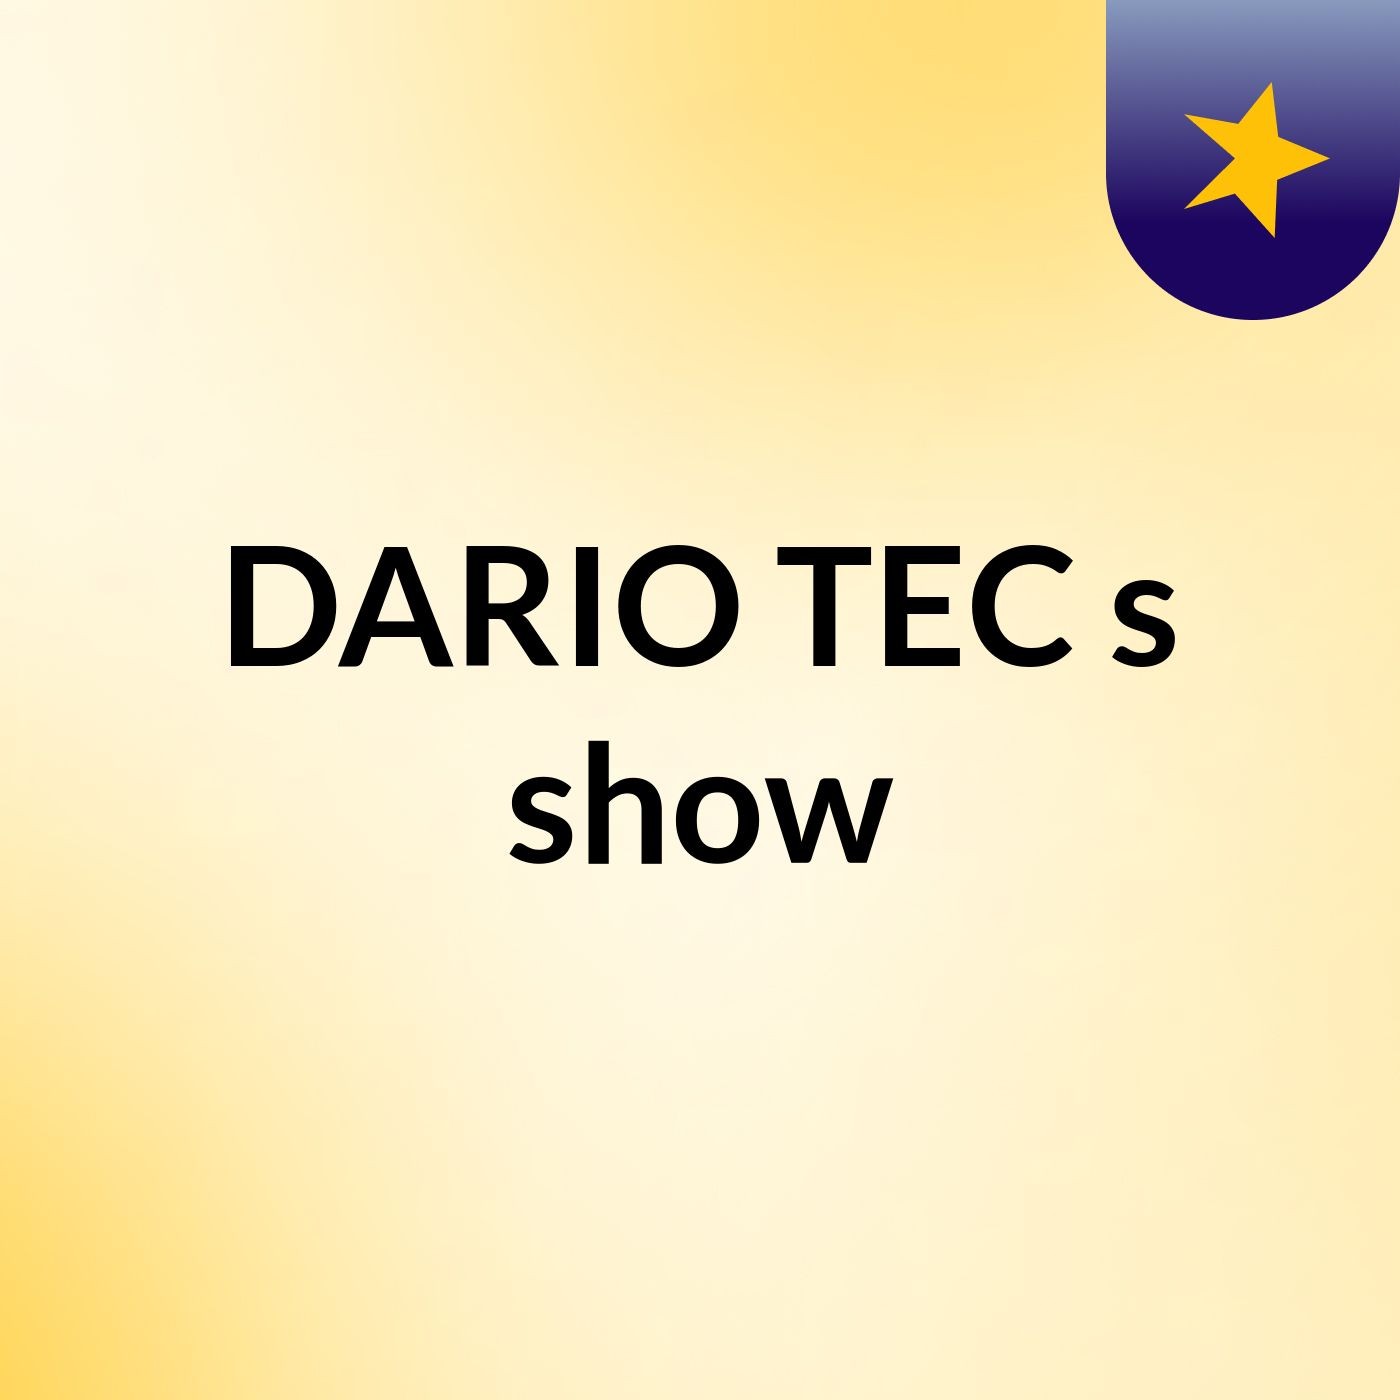 DARIO TEC's show